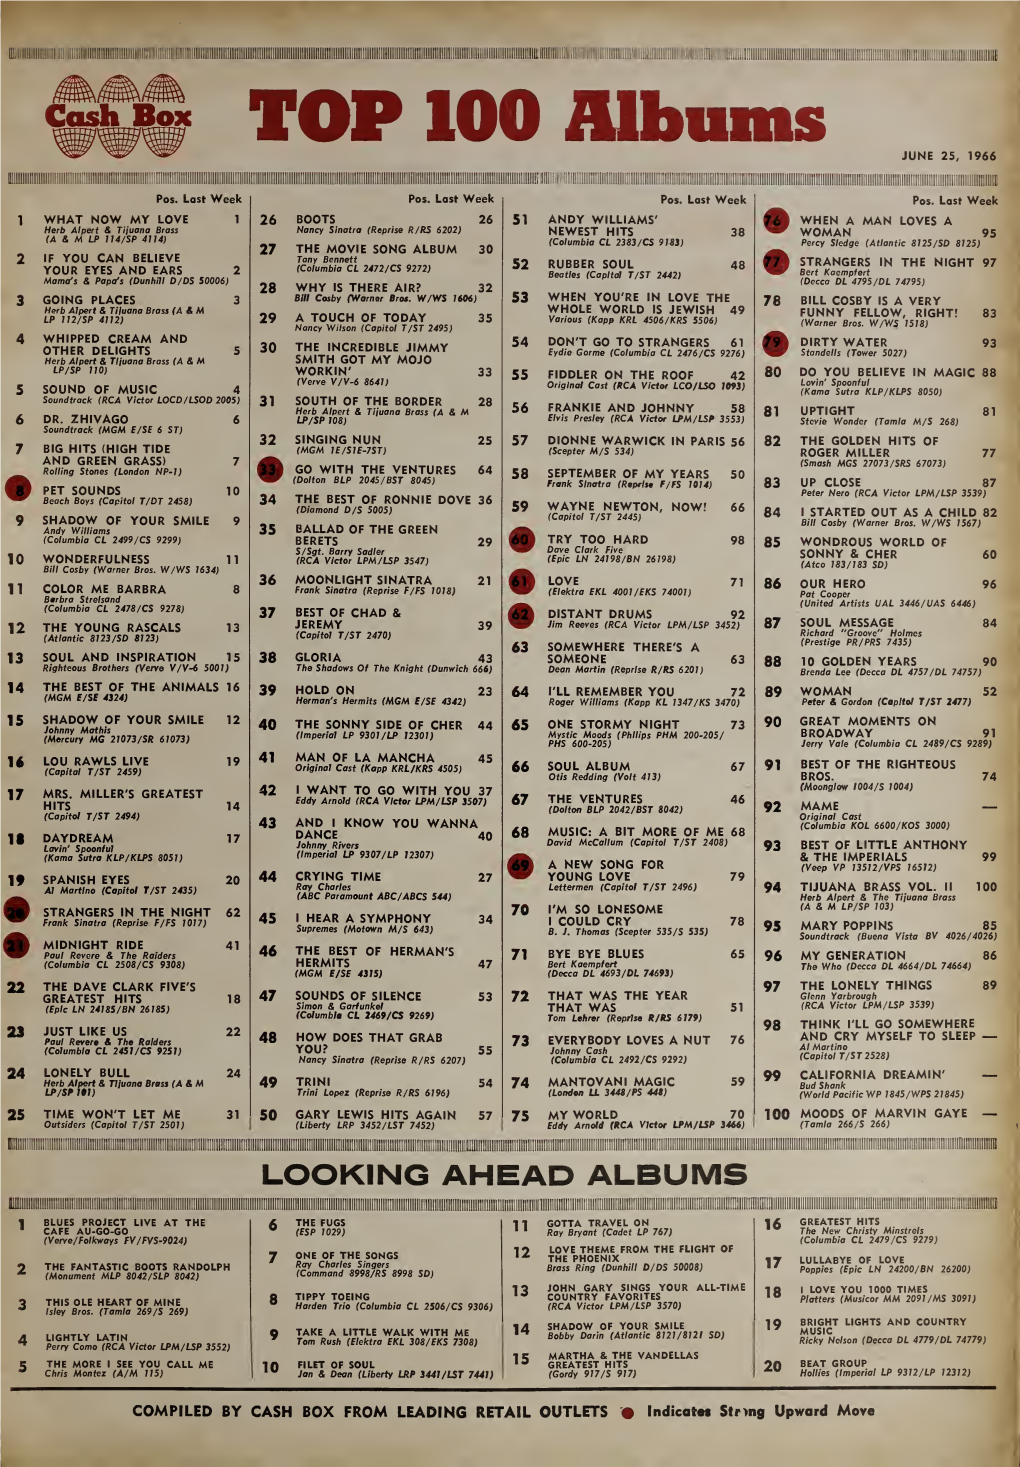 TOP 100 Albums JUNE 25, 1966